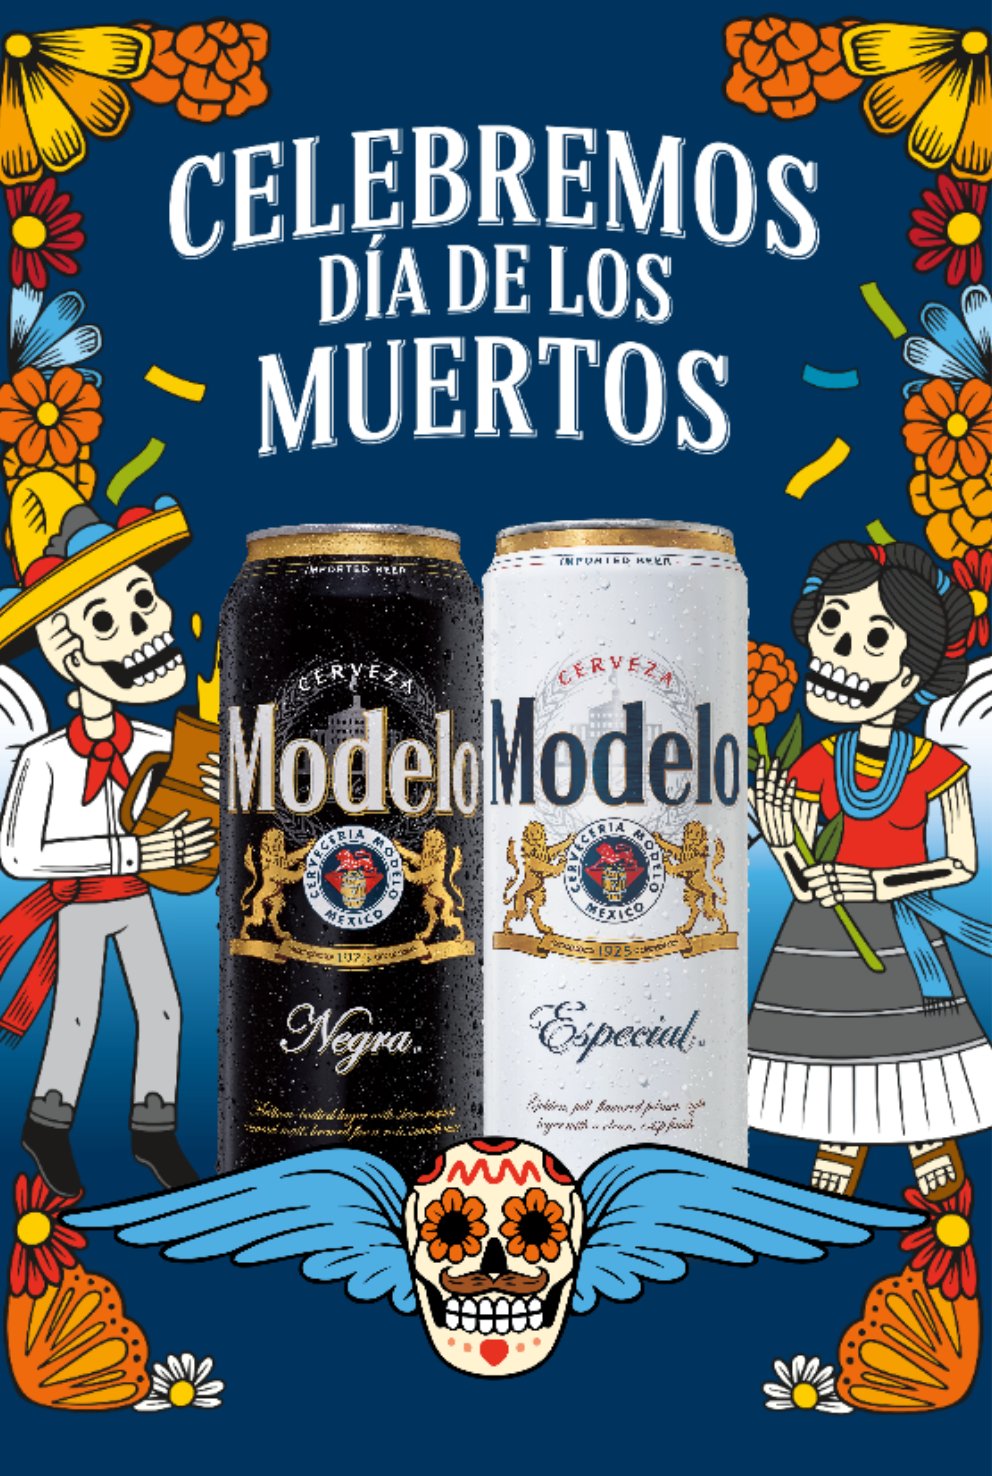 Casa Modelo  Casa Modelo Mexican Beer